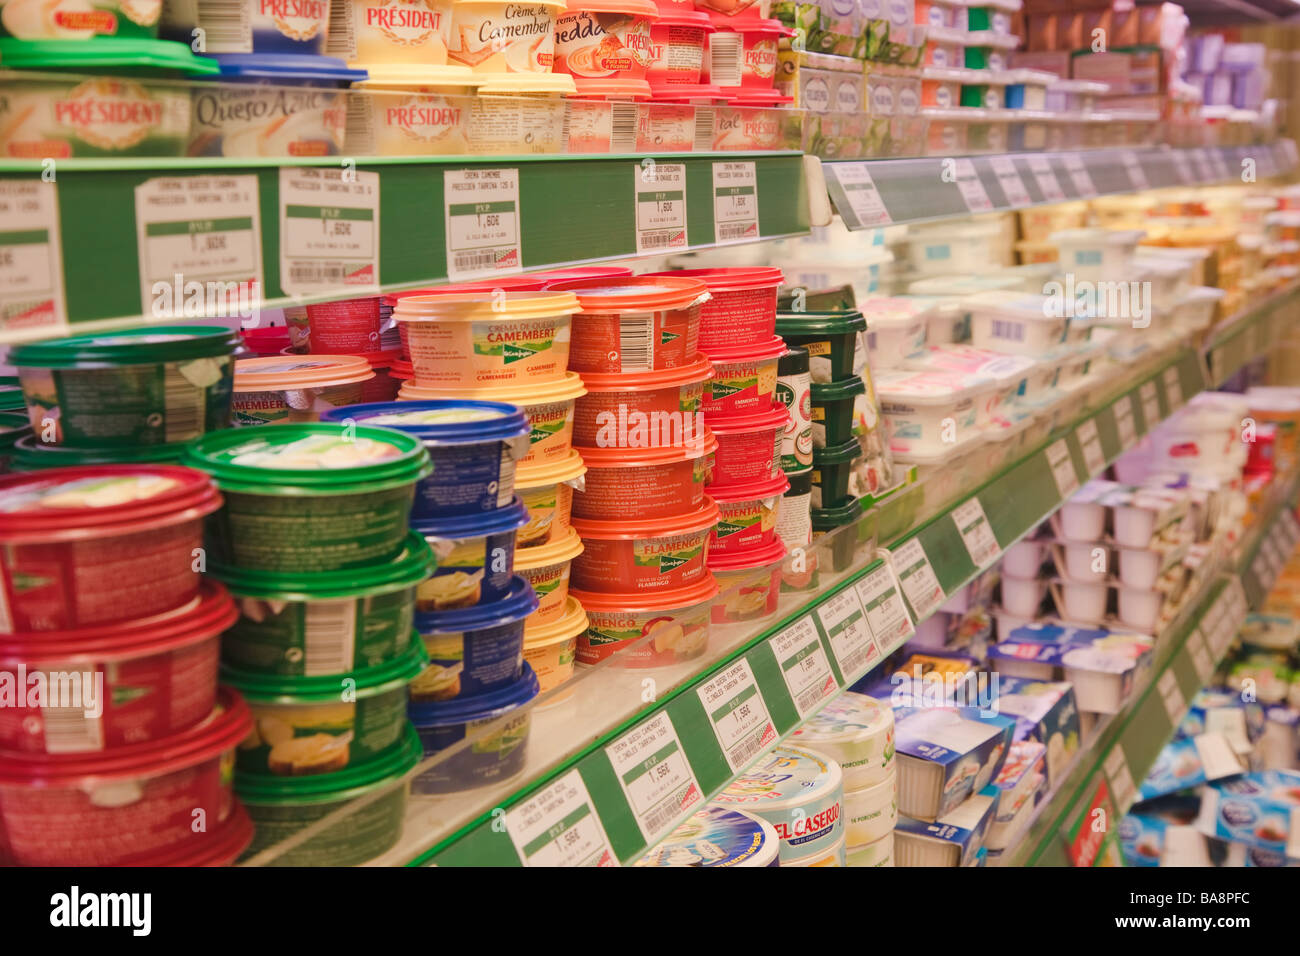 Produits laitiers dans un supermarché SuperCor sortie de El Corte Ingles, Espagne Banque D'Images